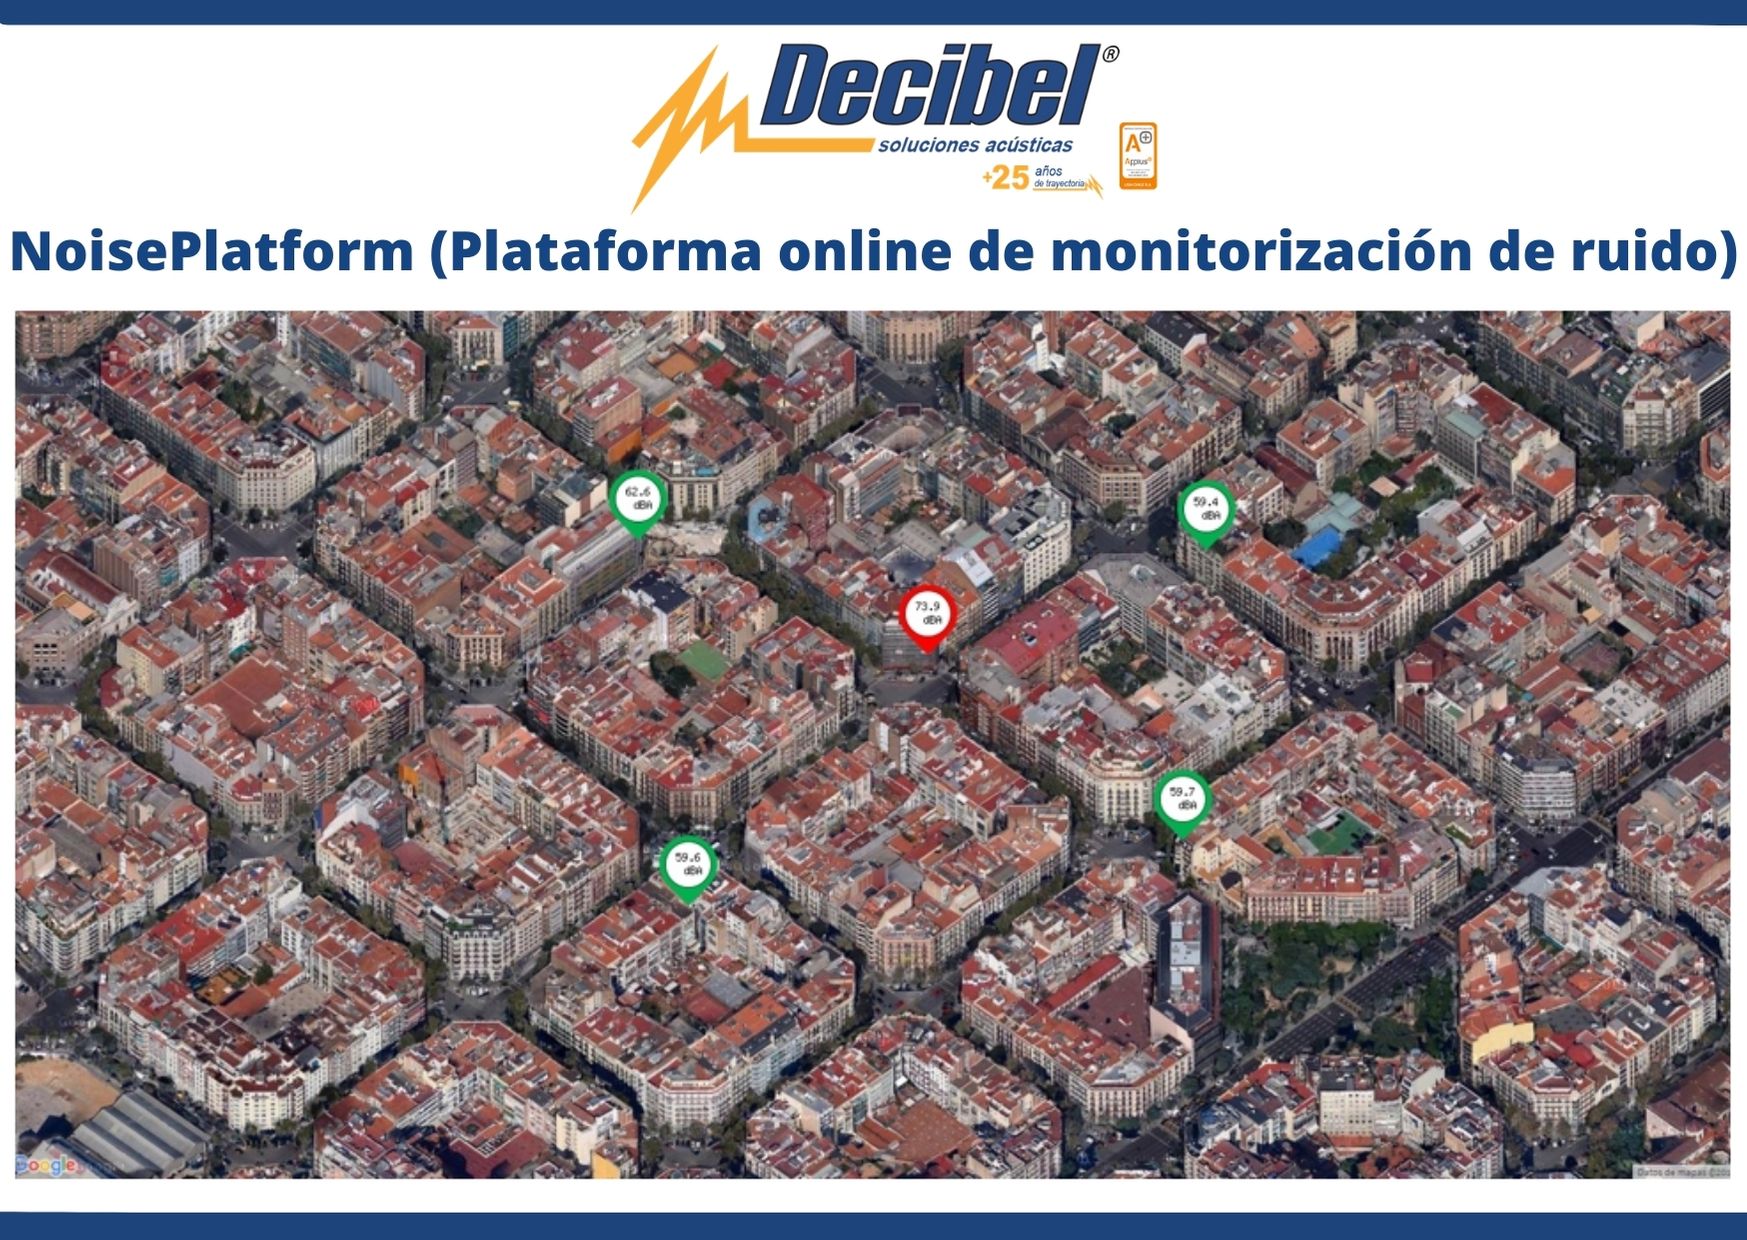 Plataforma online de monitorización de ruido NoisePlatform